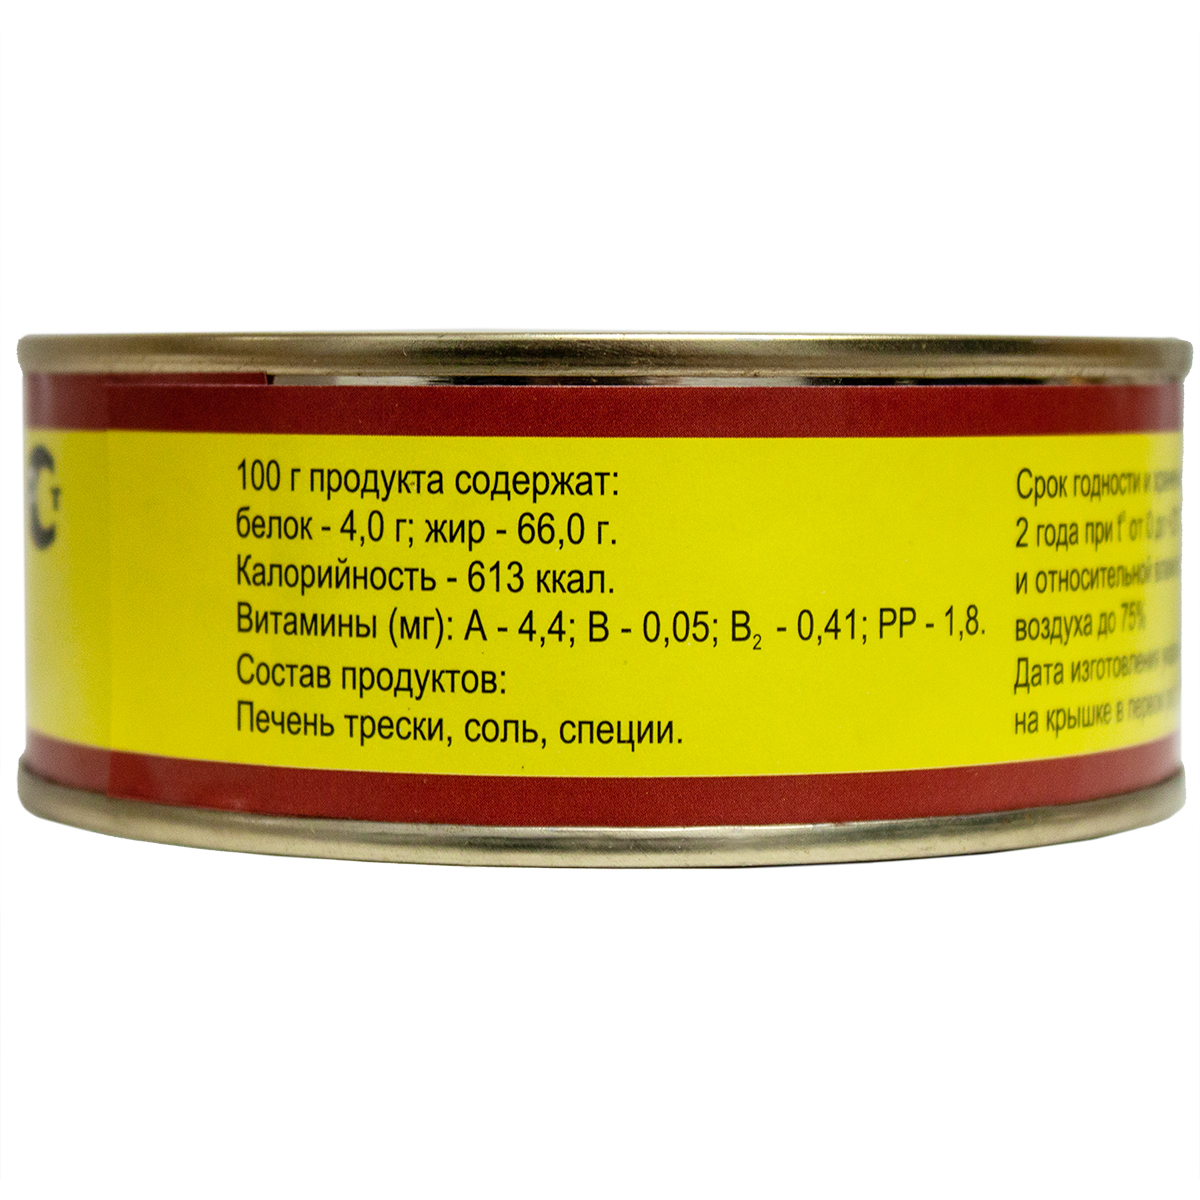 Печень трески натуральная РК Беломор из свежего сырья, 230 г